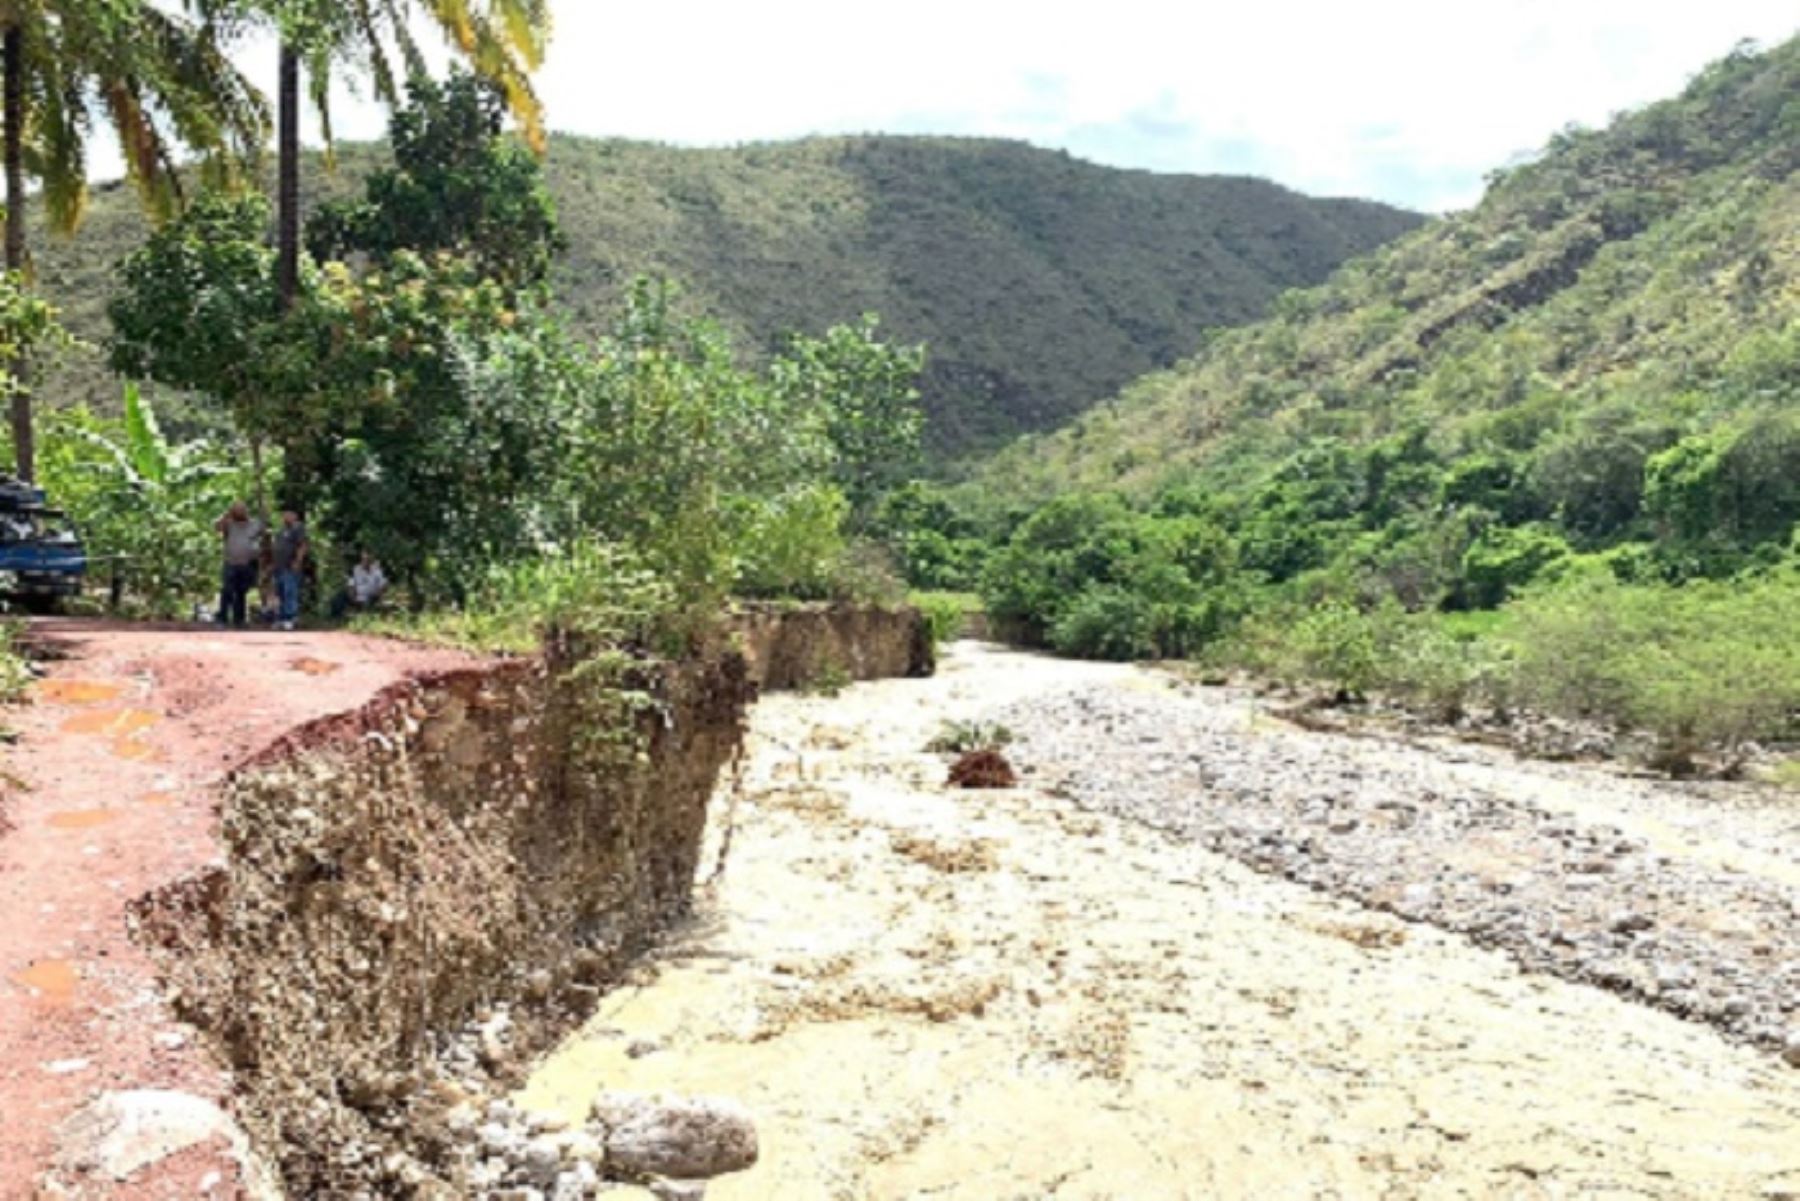 Prorrogan estado de emergencia en 9 distritos de Cajamarca afectados por lluvias intensas